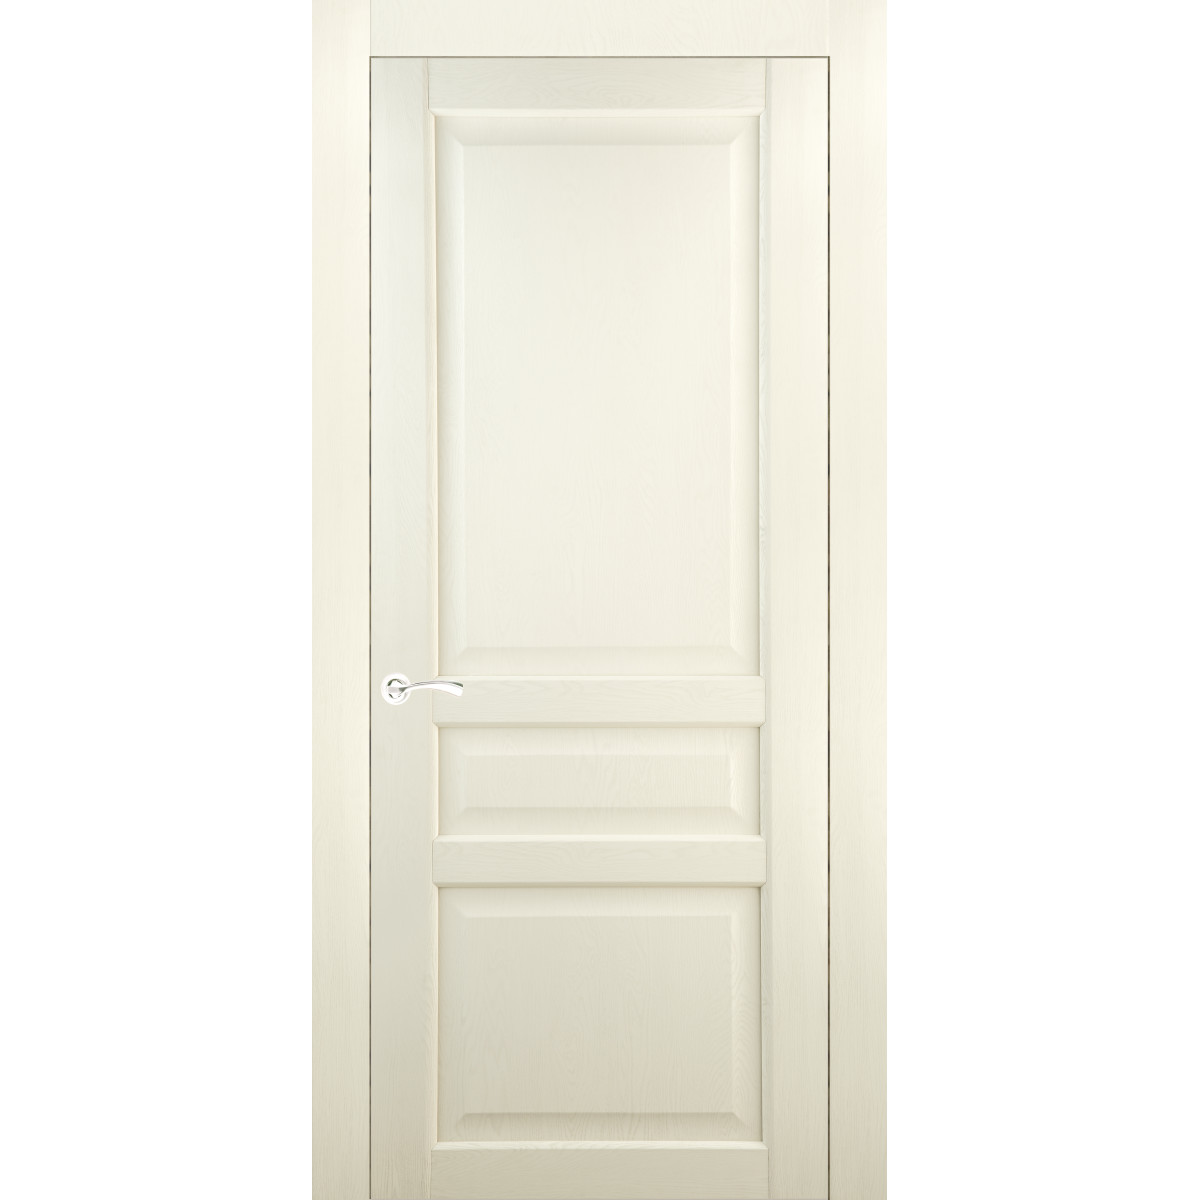 Дверь межкомнатная глухая Artens Мария 60x200 см, ПВХ, цвет айвори, с фурнитурой